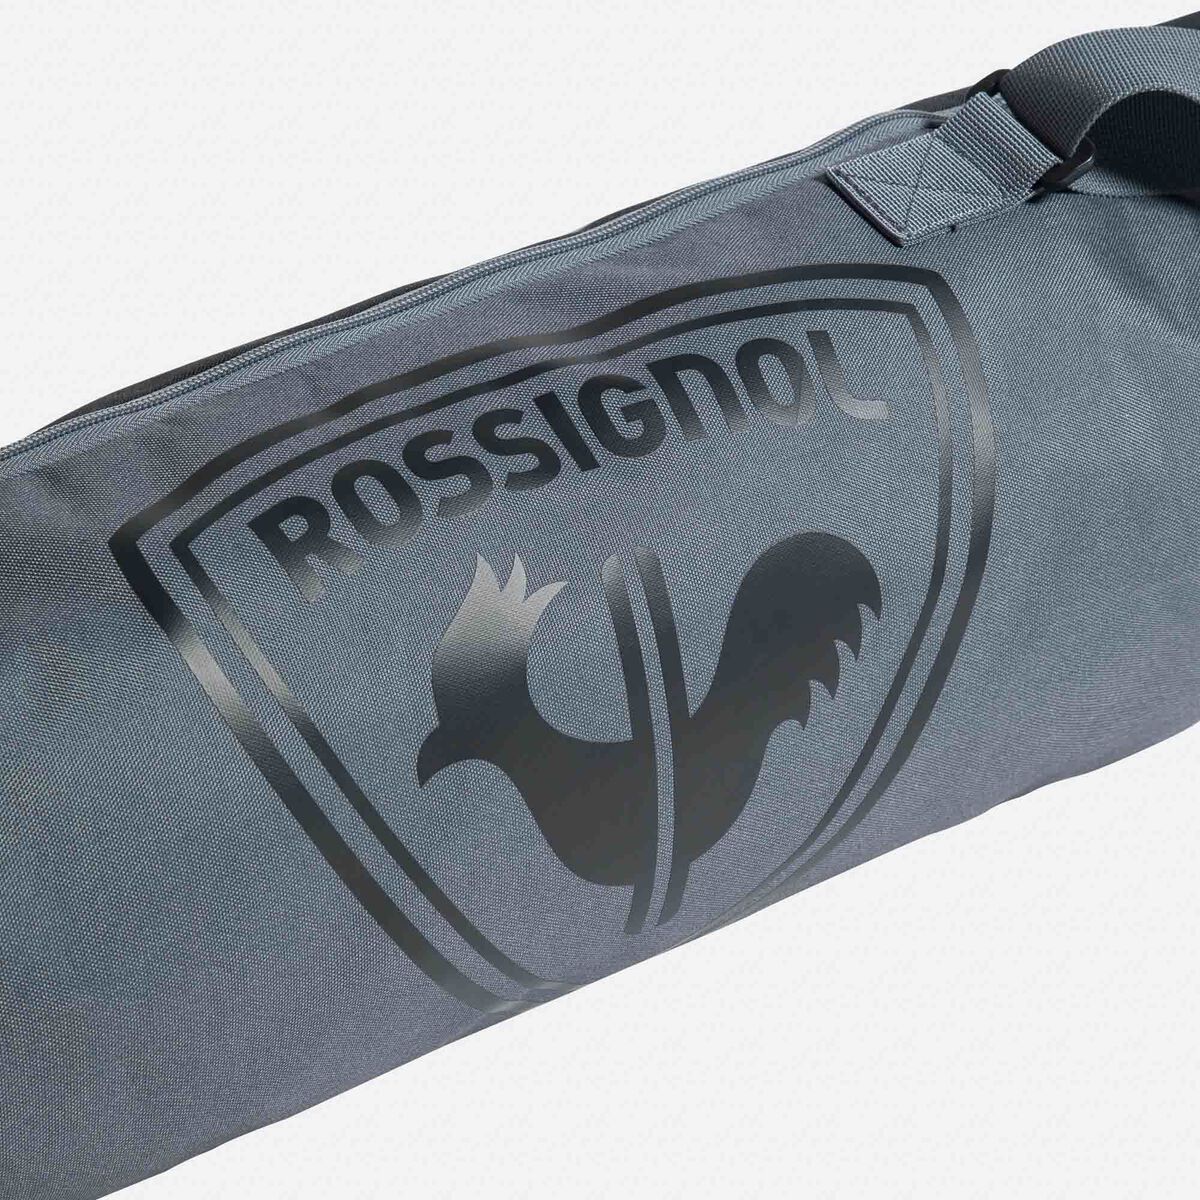 Batons de ski Rossignol Tactic Noir Bleu 2017 - 130 cm